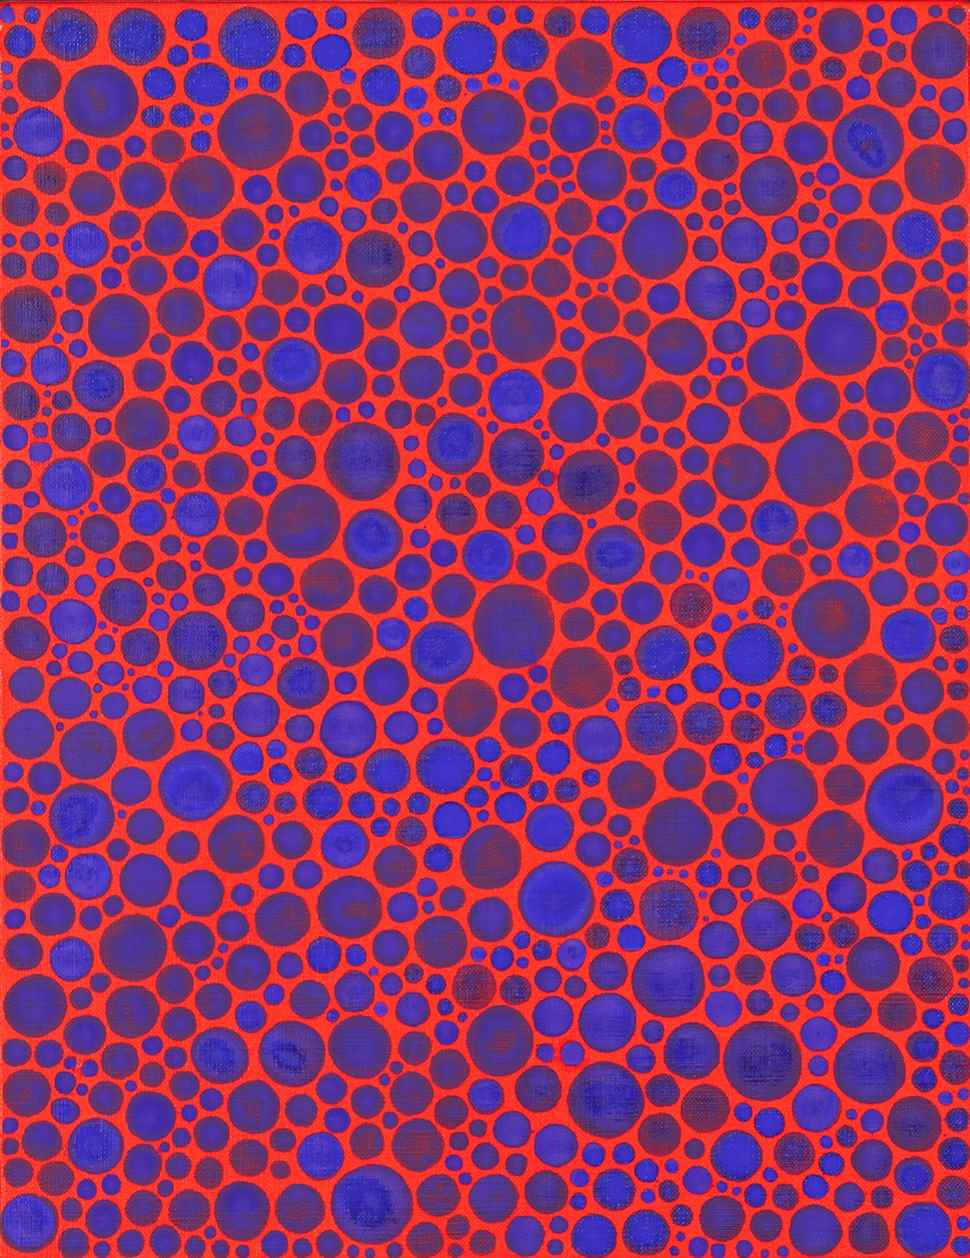 Dots-Obsession - Yayoi Kusama (b. 1929 - )